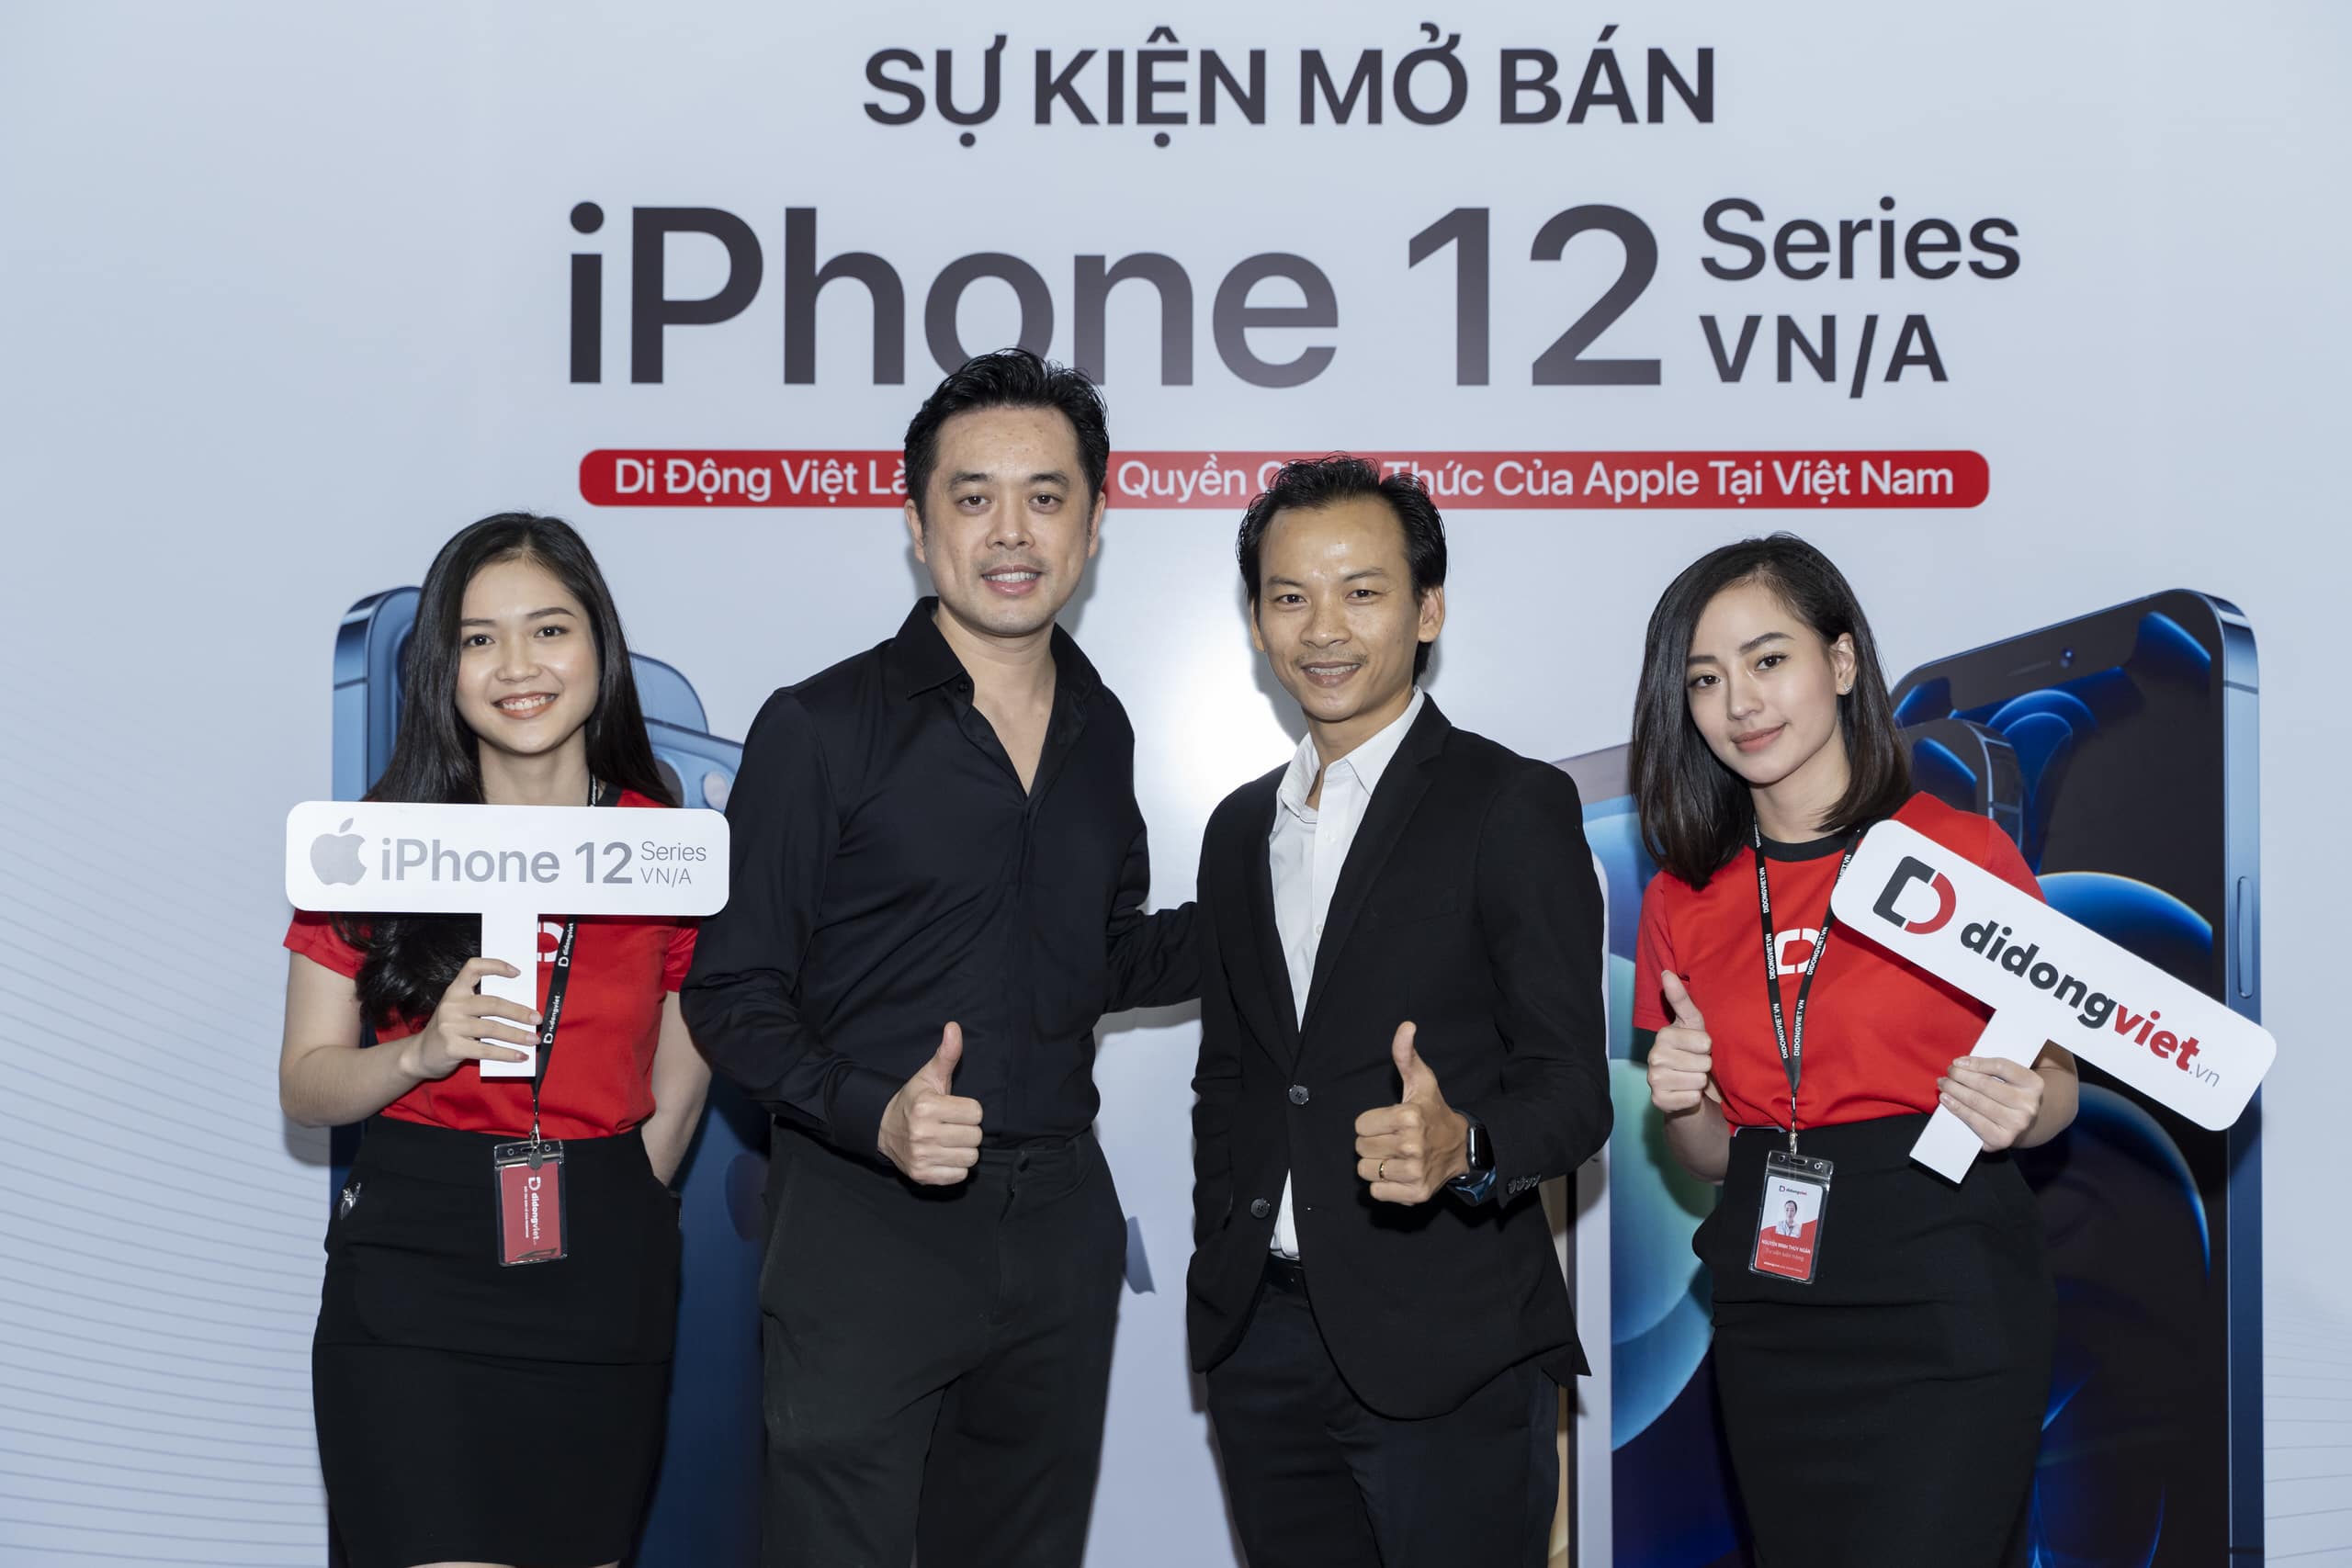 Sự kiện mở bán iPhone 12 VN/A tại Di Động Việt